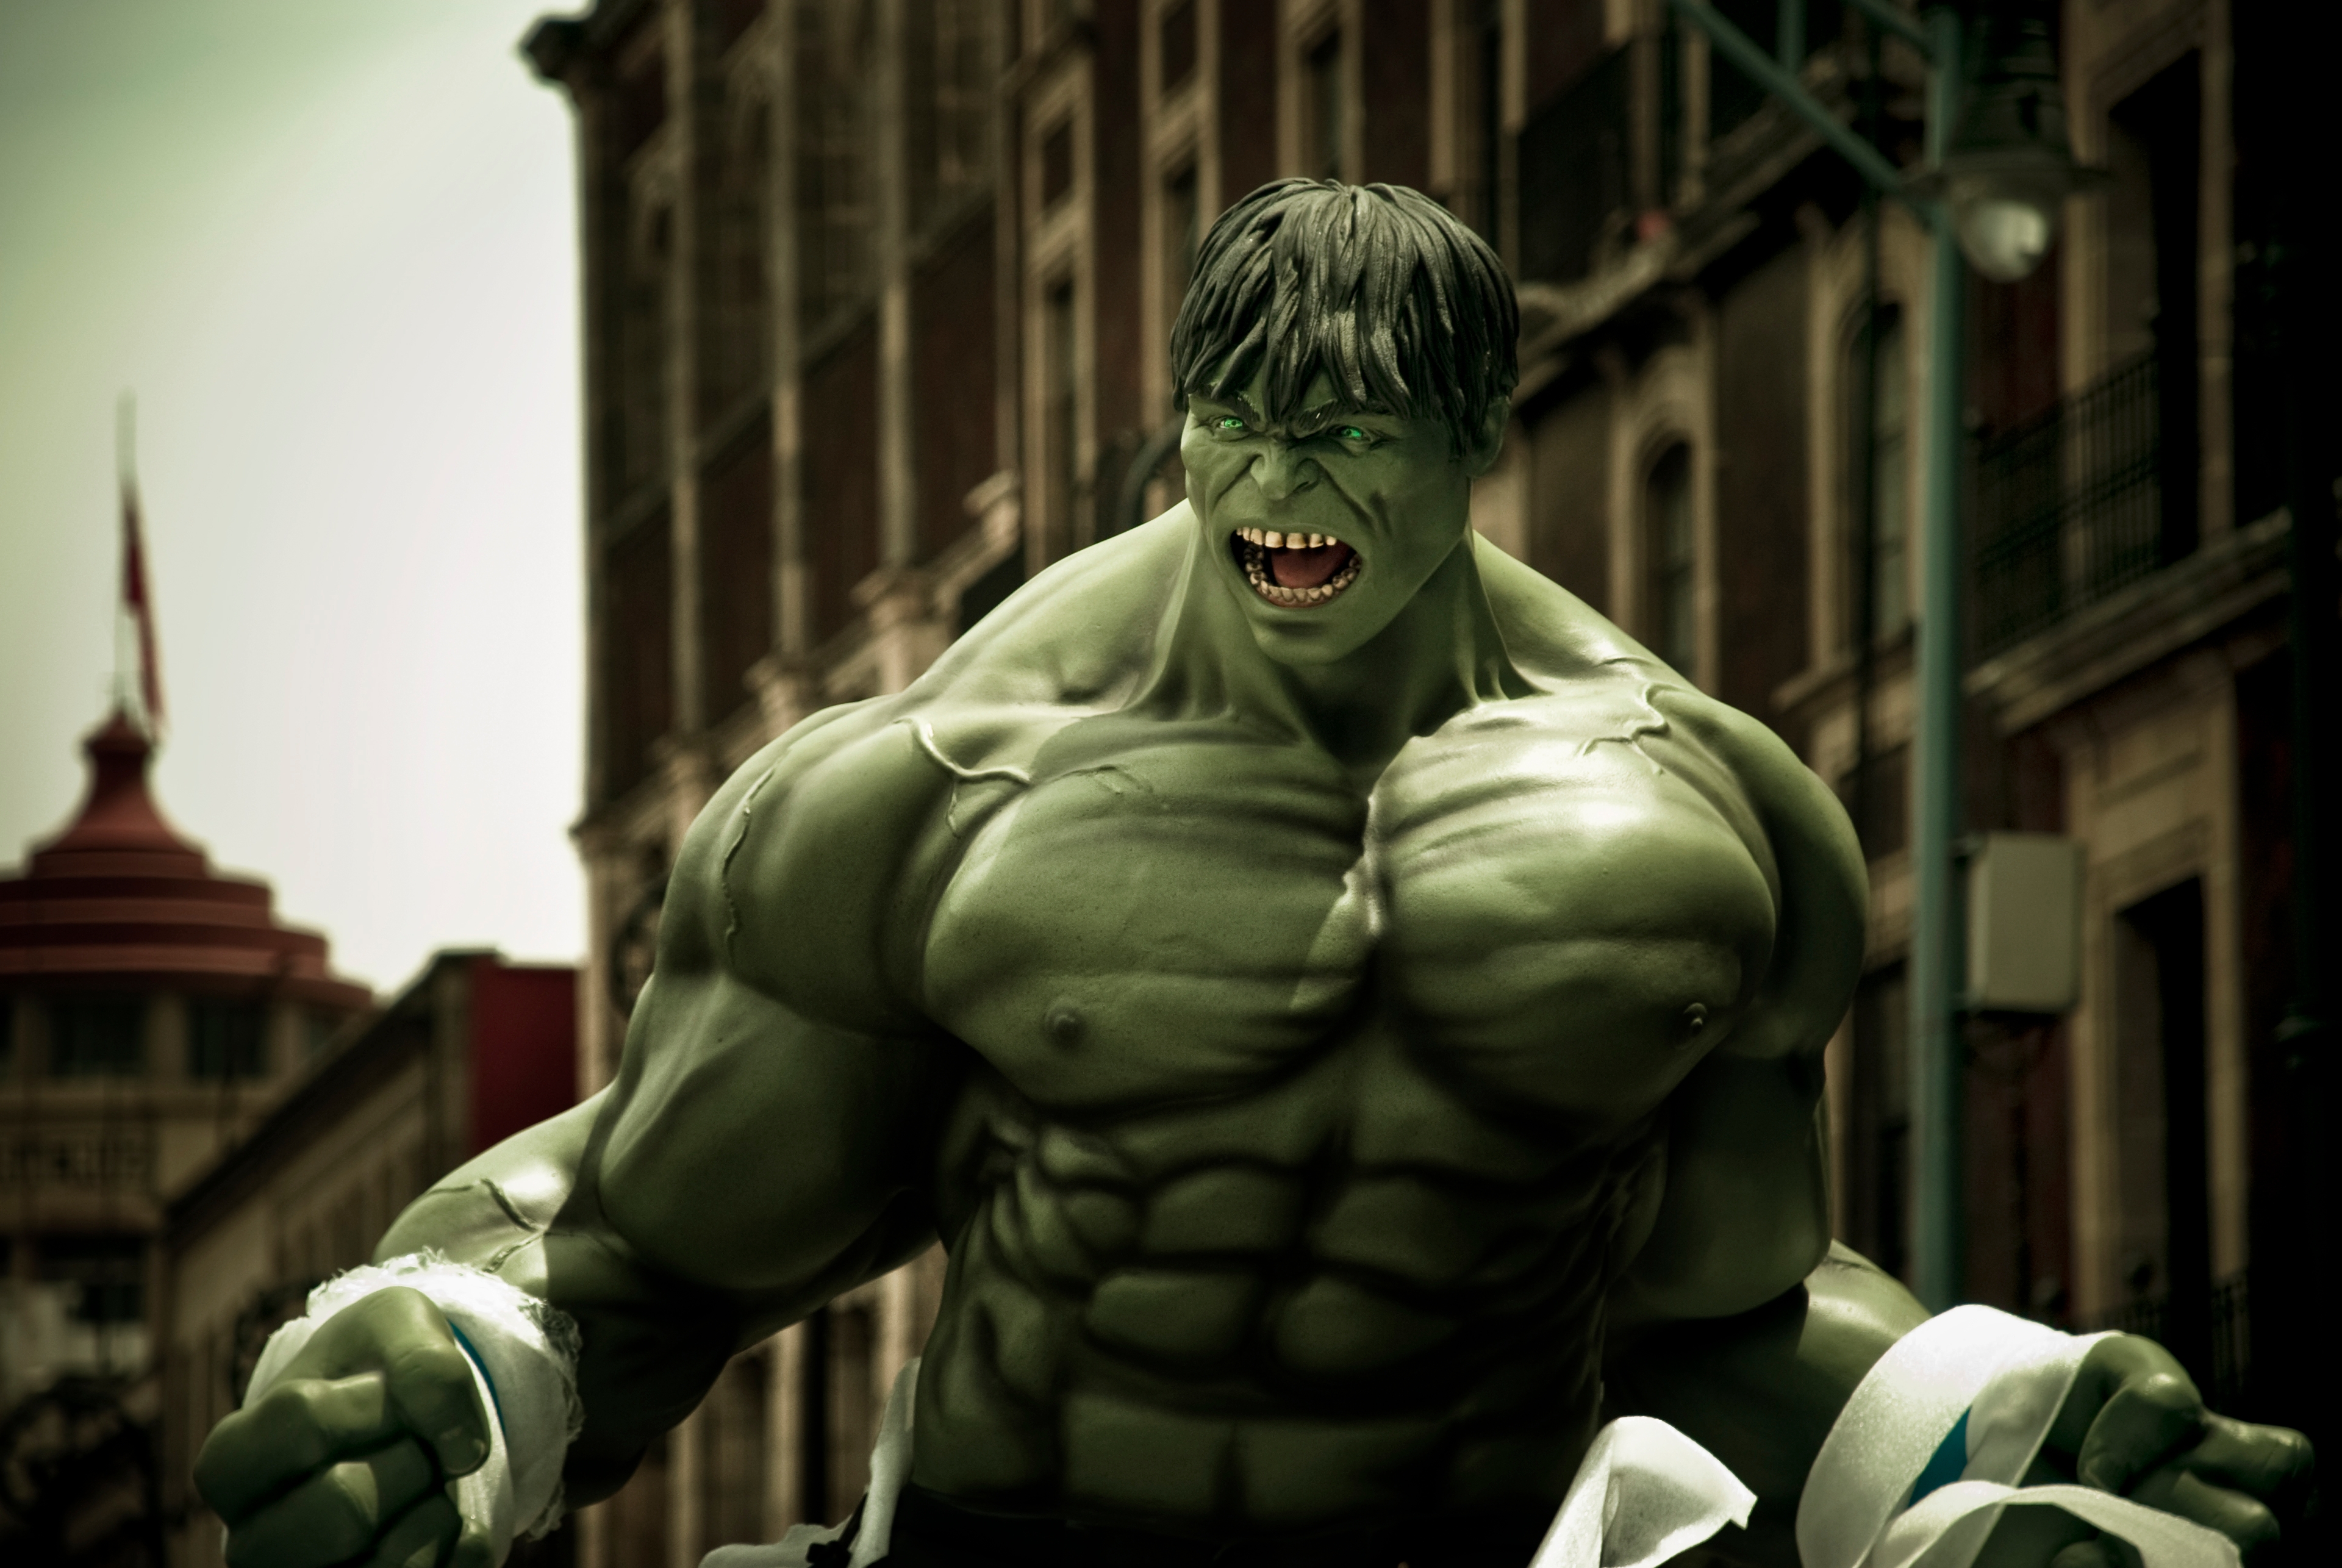 auteur Hulk de la citation J'ai vraiment aimé imiter le hulk quand j'étais un petit enfant. Mon père l'a apprécié et m'a toujours demandé de l'imiter et m'a donné le surnom.